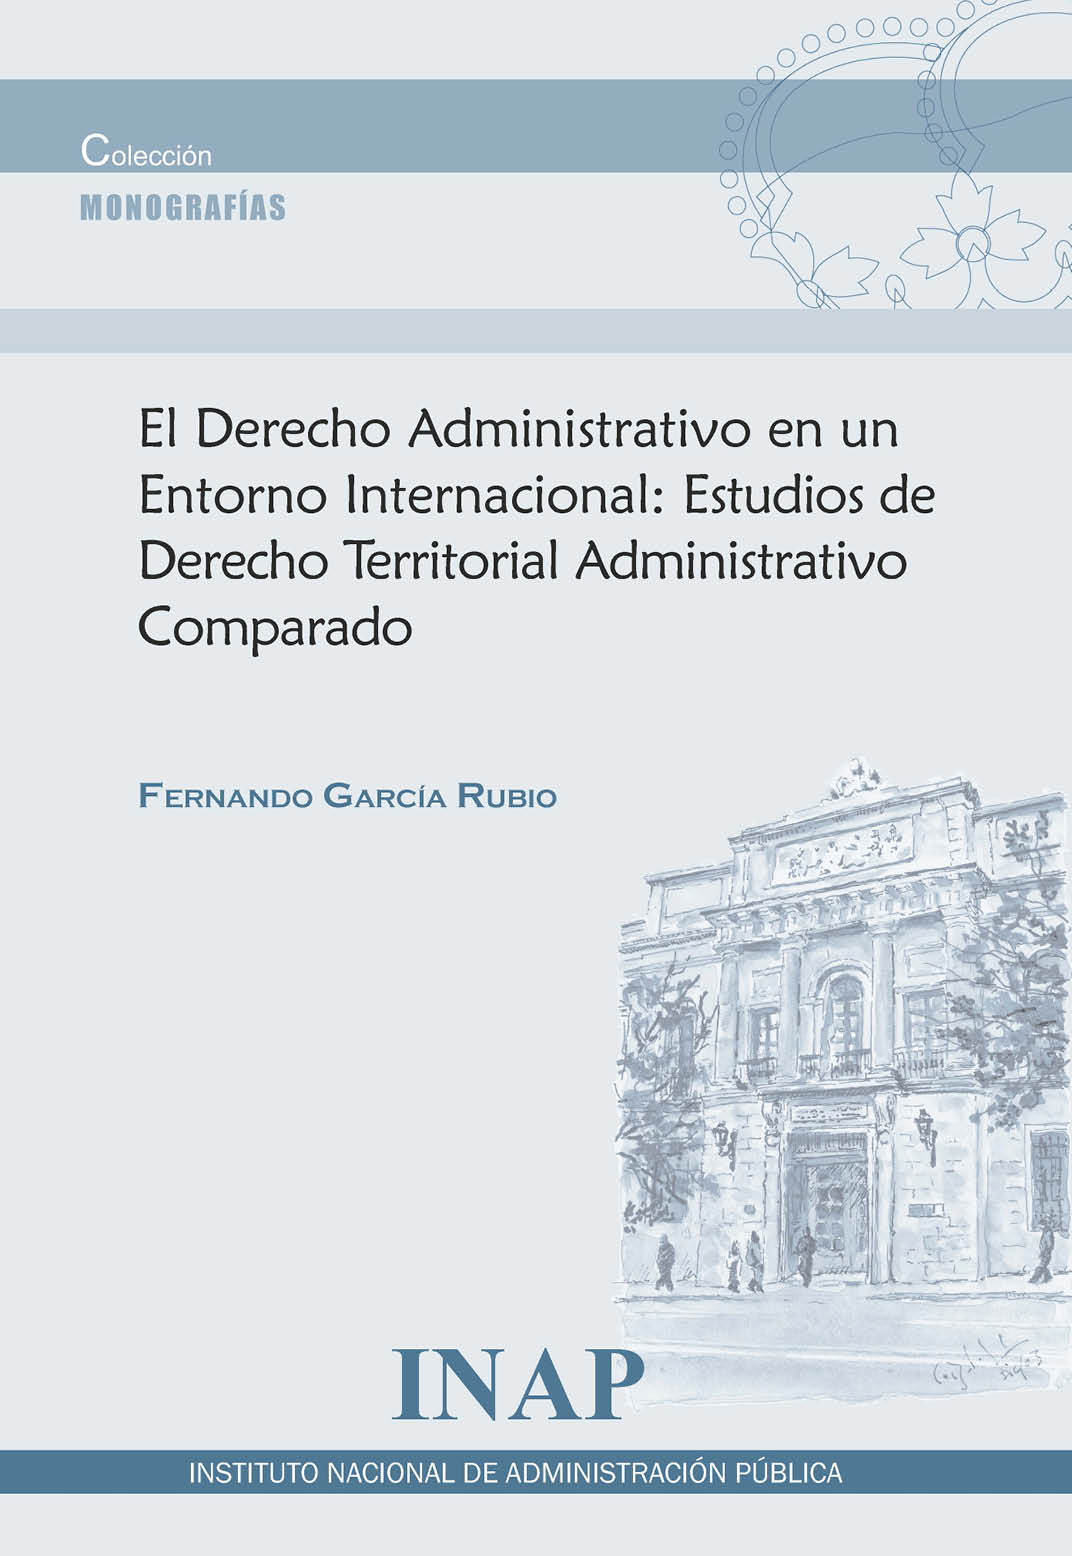 El Derecho Administrativo en un Entorno Internacional: Estudios de Derecho Territorial Administrativo Comparado